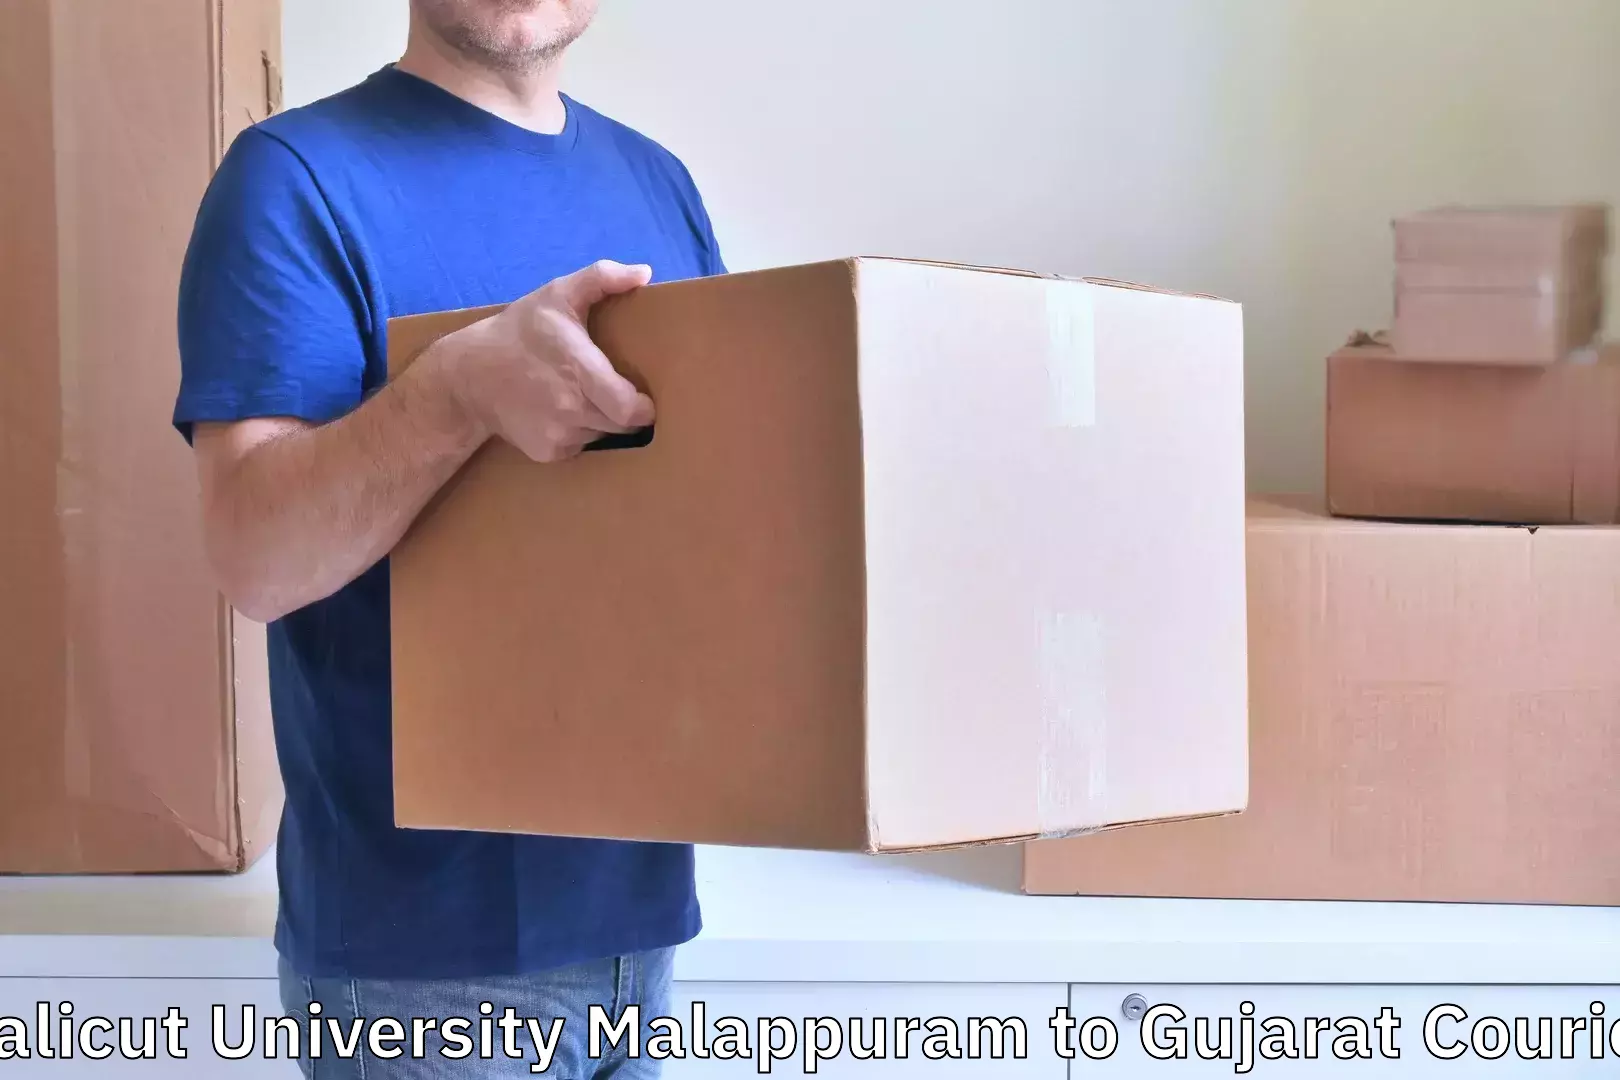 Nationwide luggage courier Calicut University Malappuram to Ahmedabad